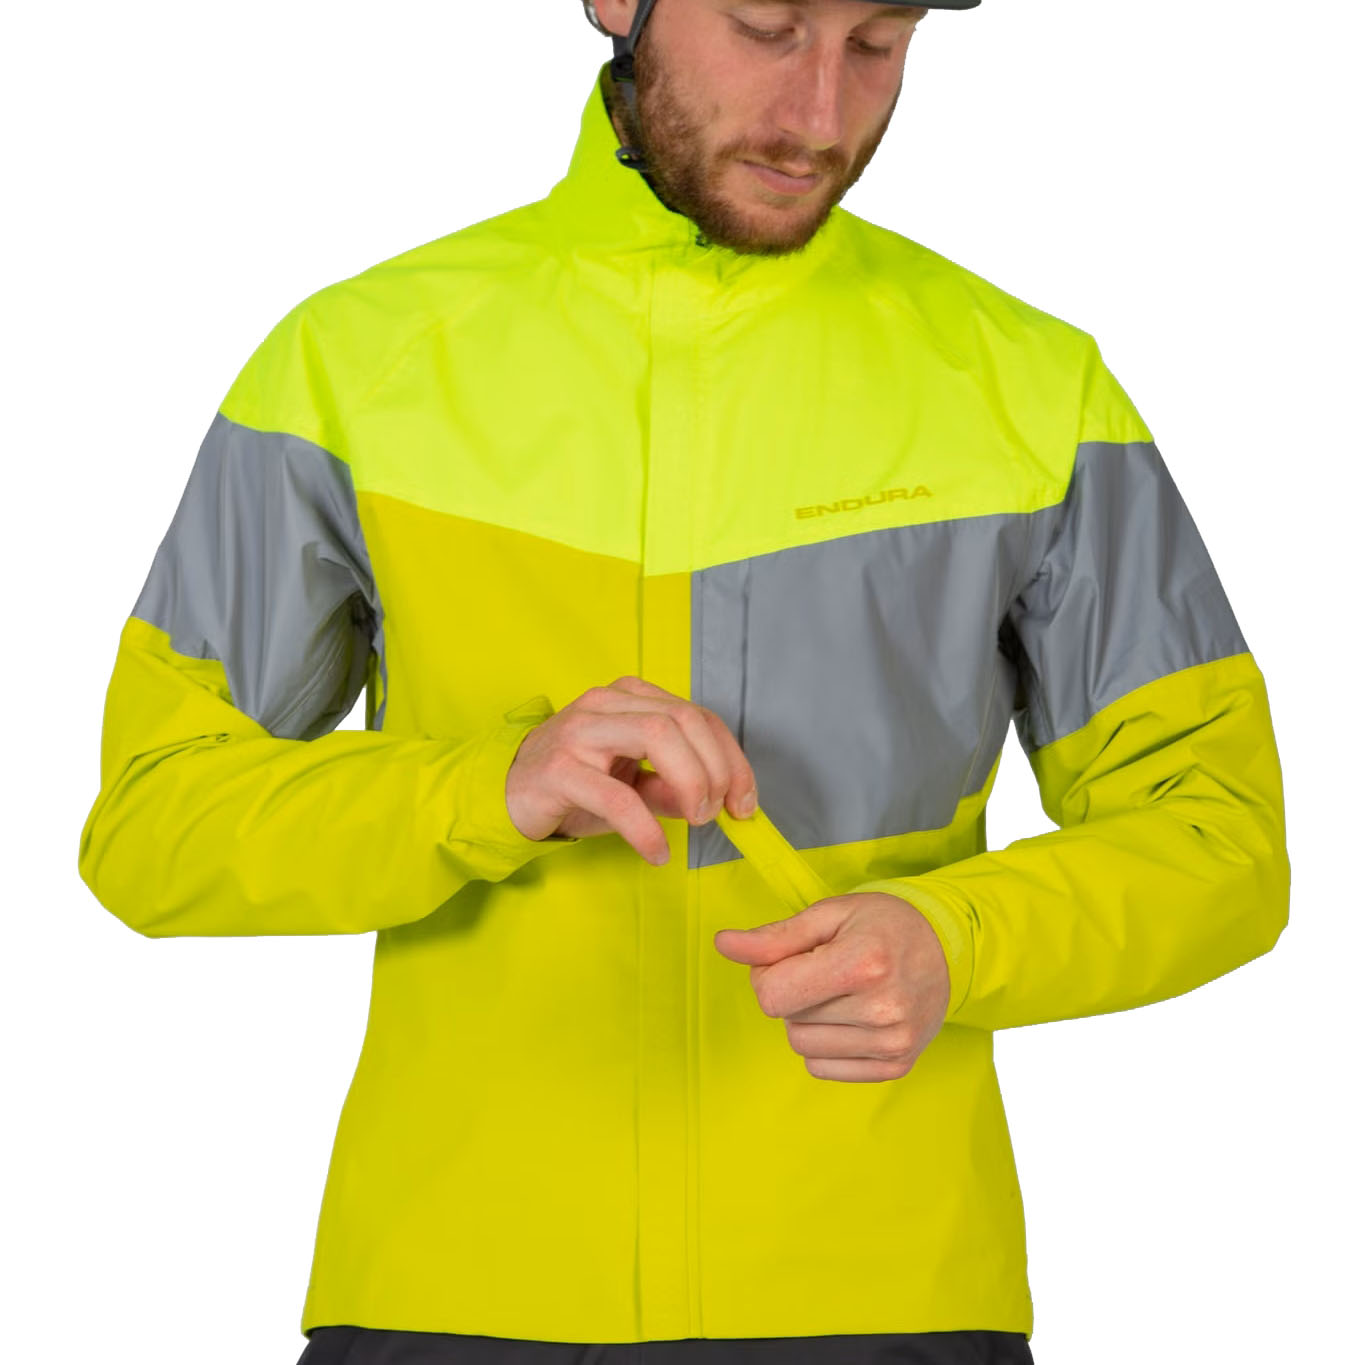 Produktbild von Endura Urban Luminite II Jacke Herren - neon-gelb / reflektierend